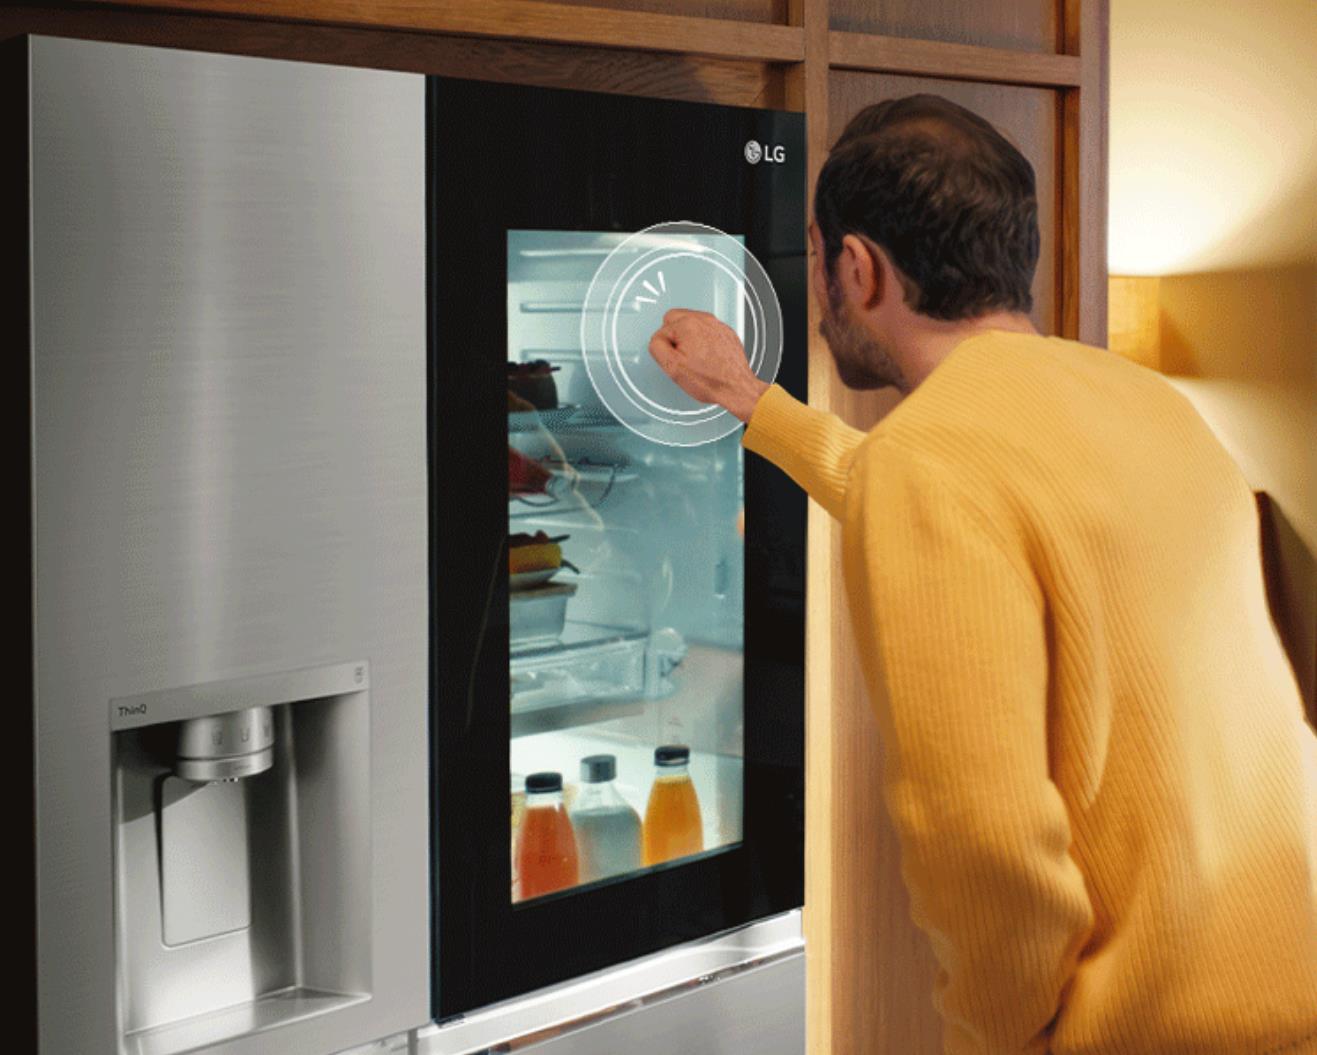 Chỉ nhờ tấm kính trên cánh cửa, LG InstaView đã thay đổi hoàn toàn cách chúng ta dùng tủ lạnh hàng ngày - Ảnh 2.